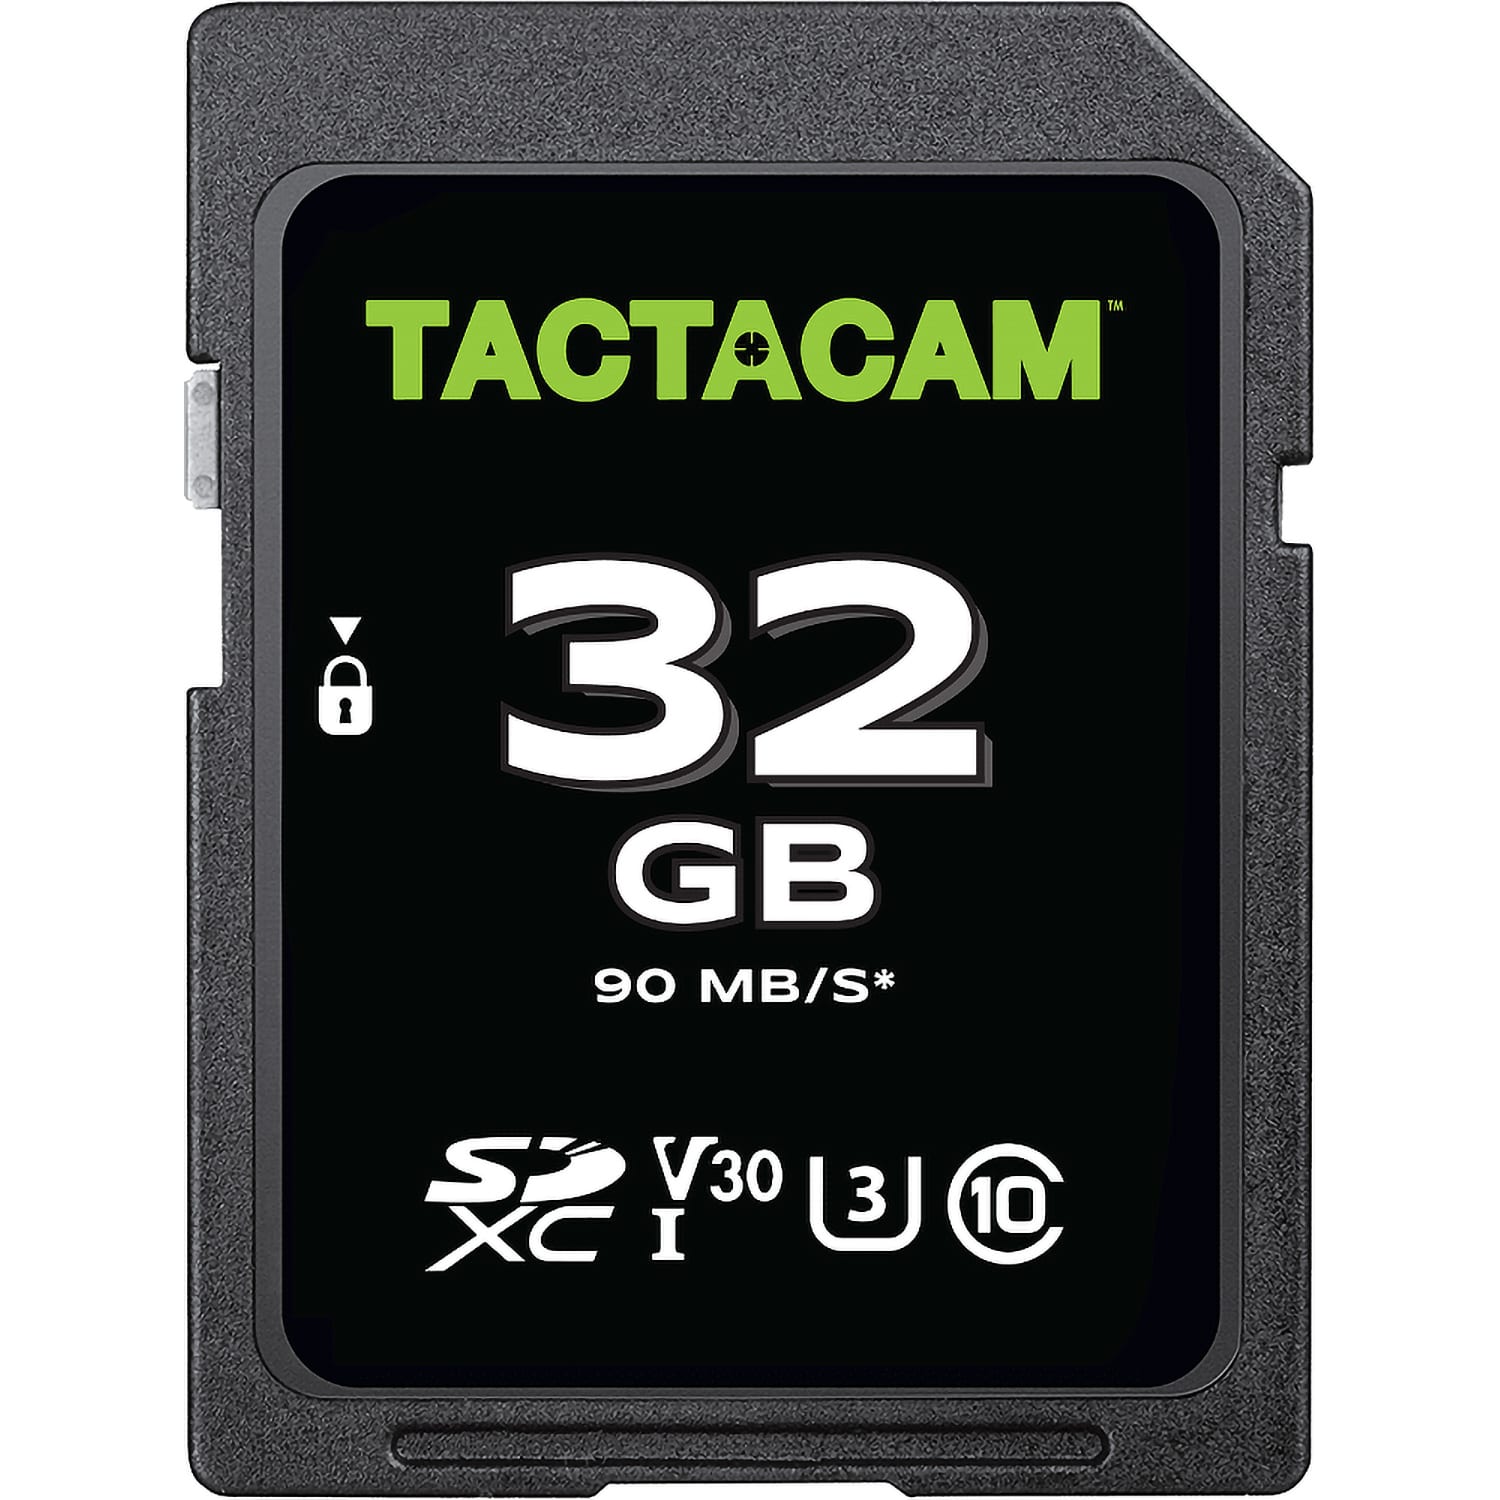 Tactacam™ REVEAL X Gen 2.0 Cellular Trail Camera Combo